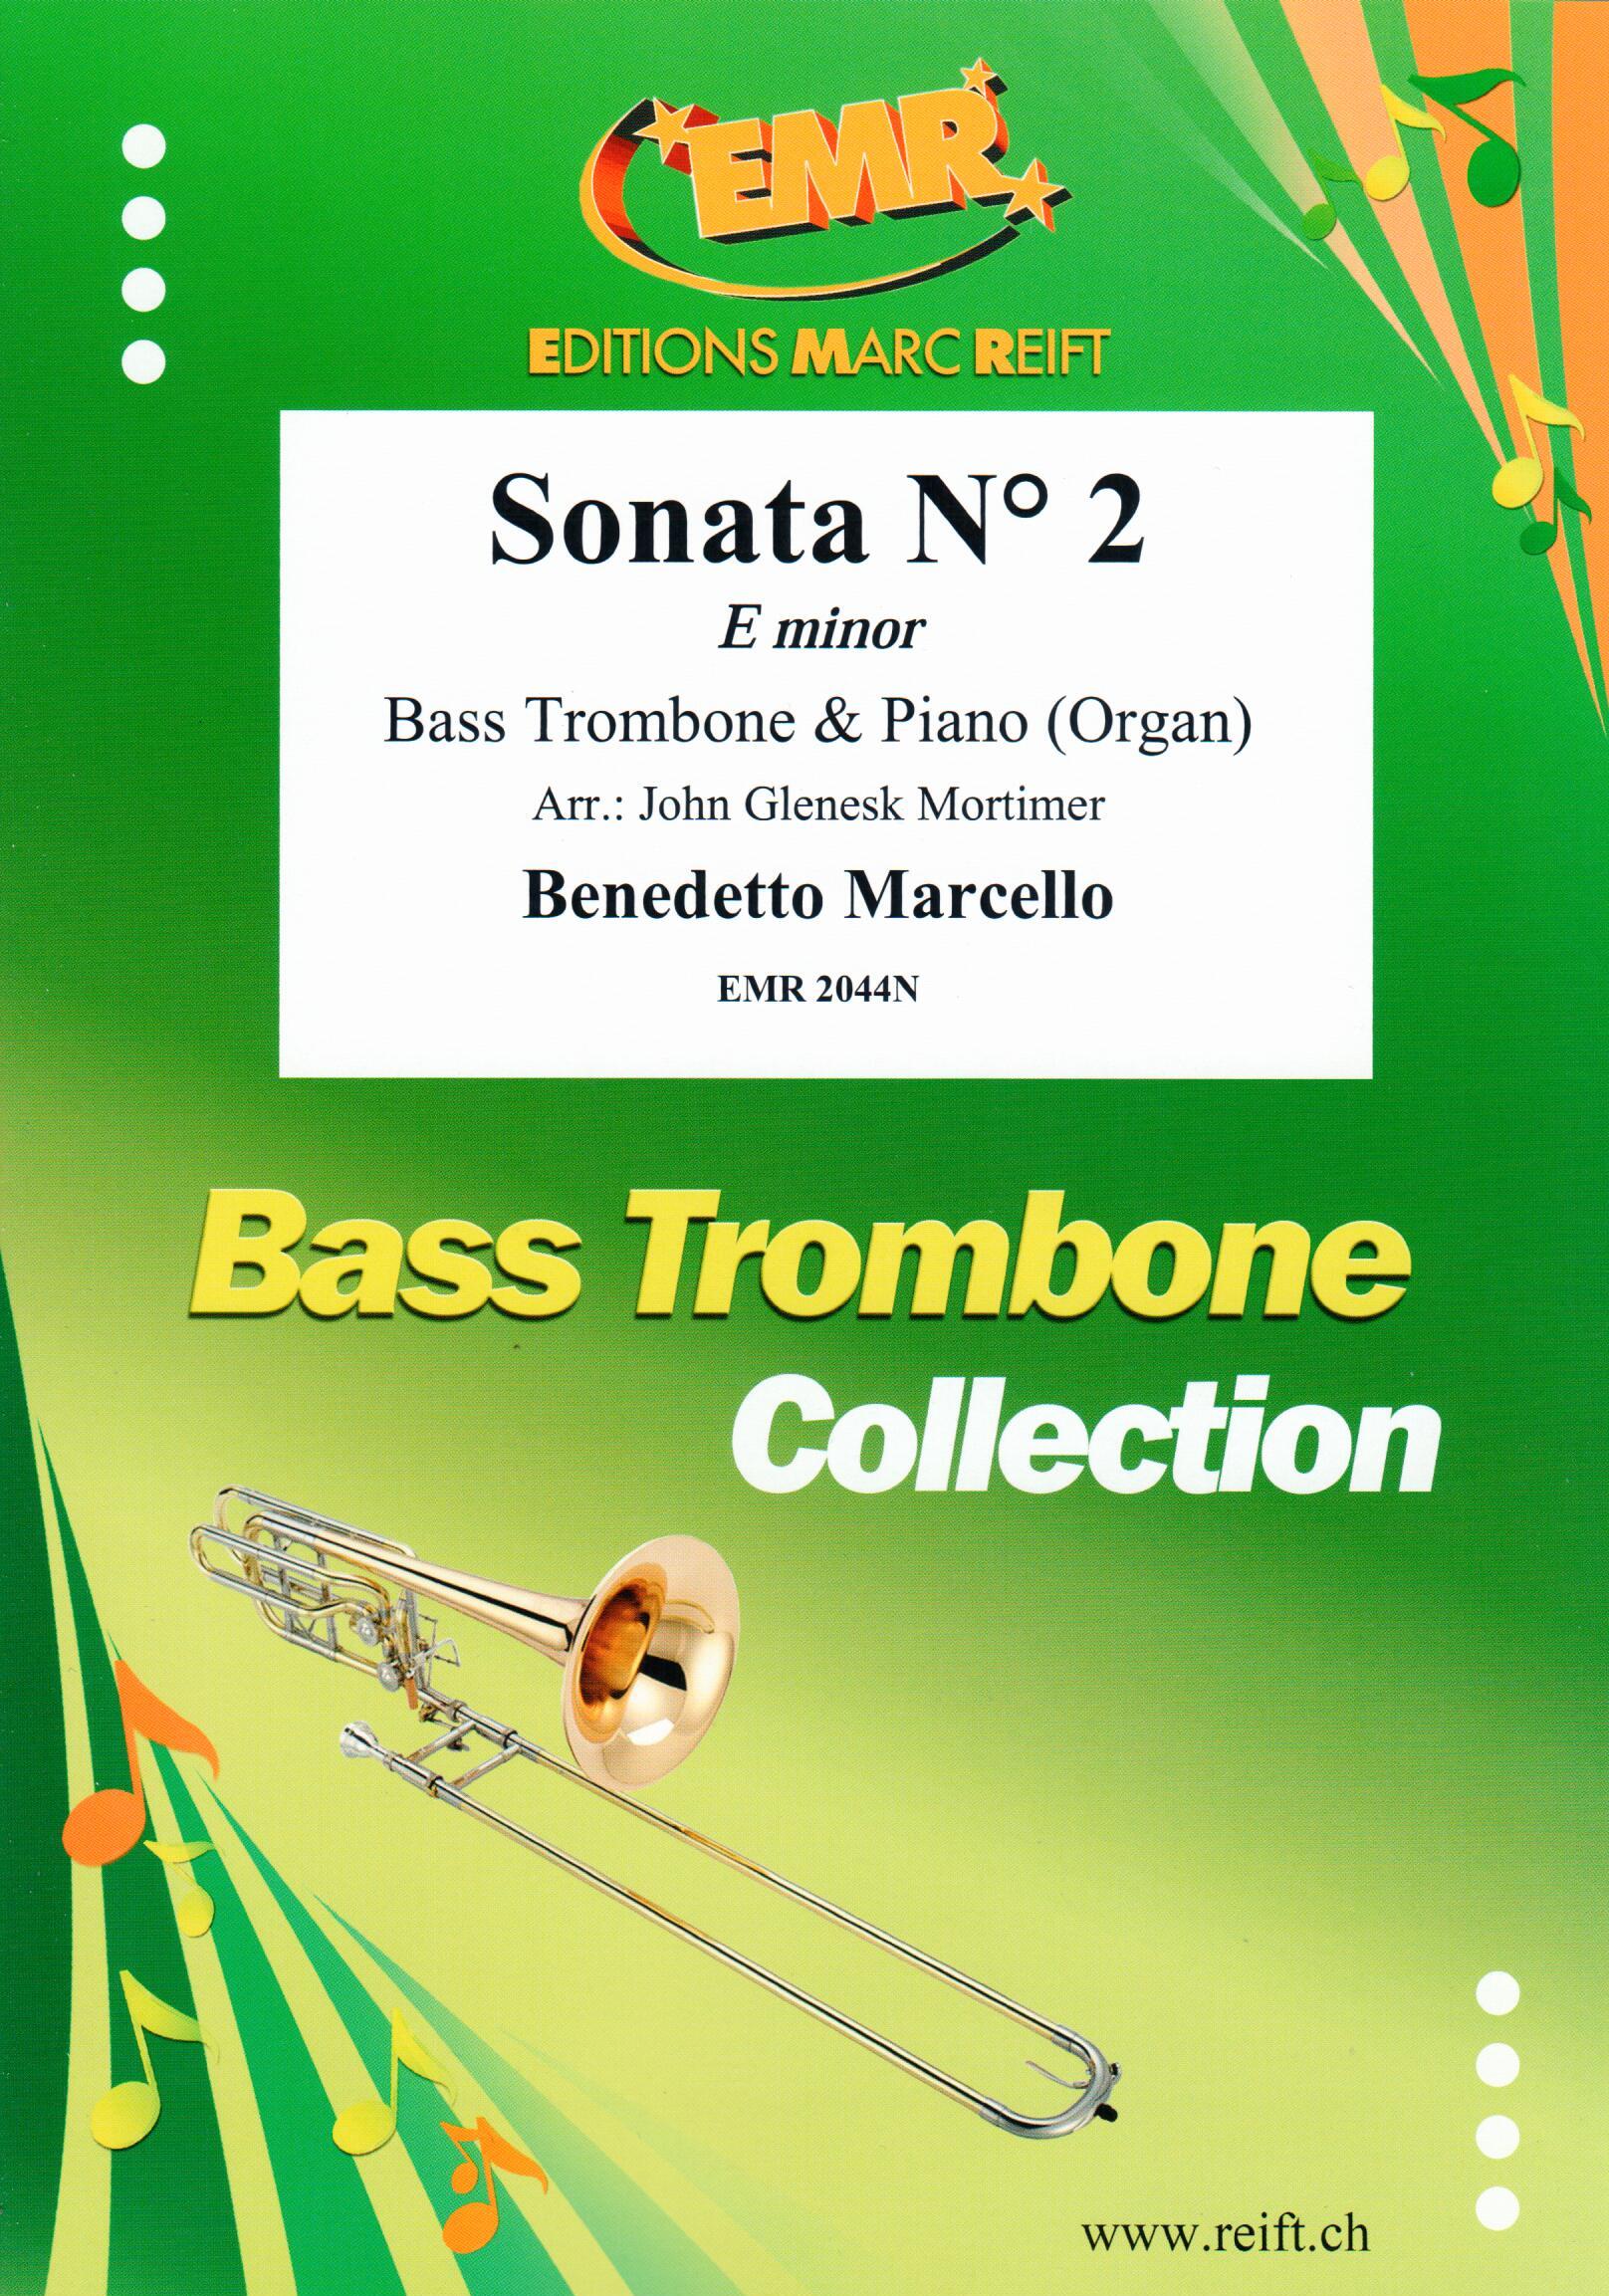 SONATA N° 2 IN E MINOR, EMR Bass Trombone